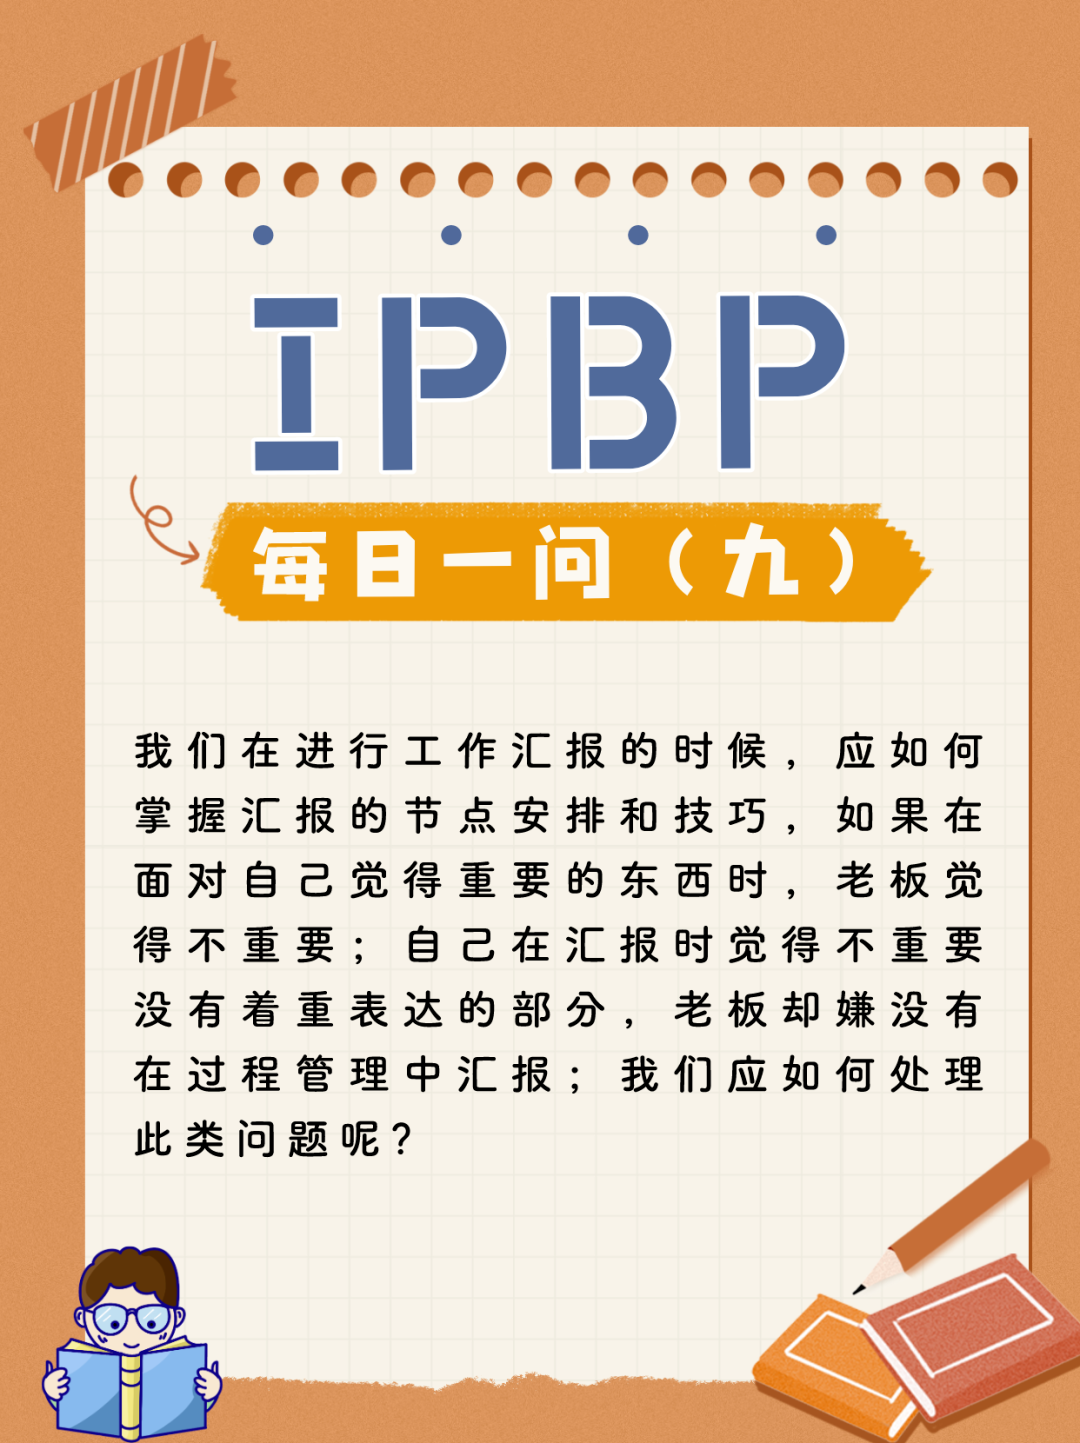 企业IPR看这里！IPBP高管班七夕限定特惠，现在报名准没错！